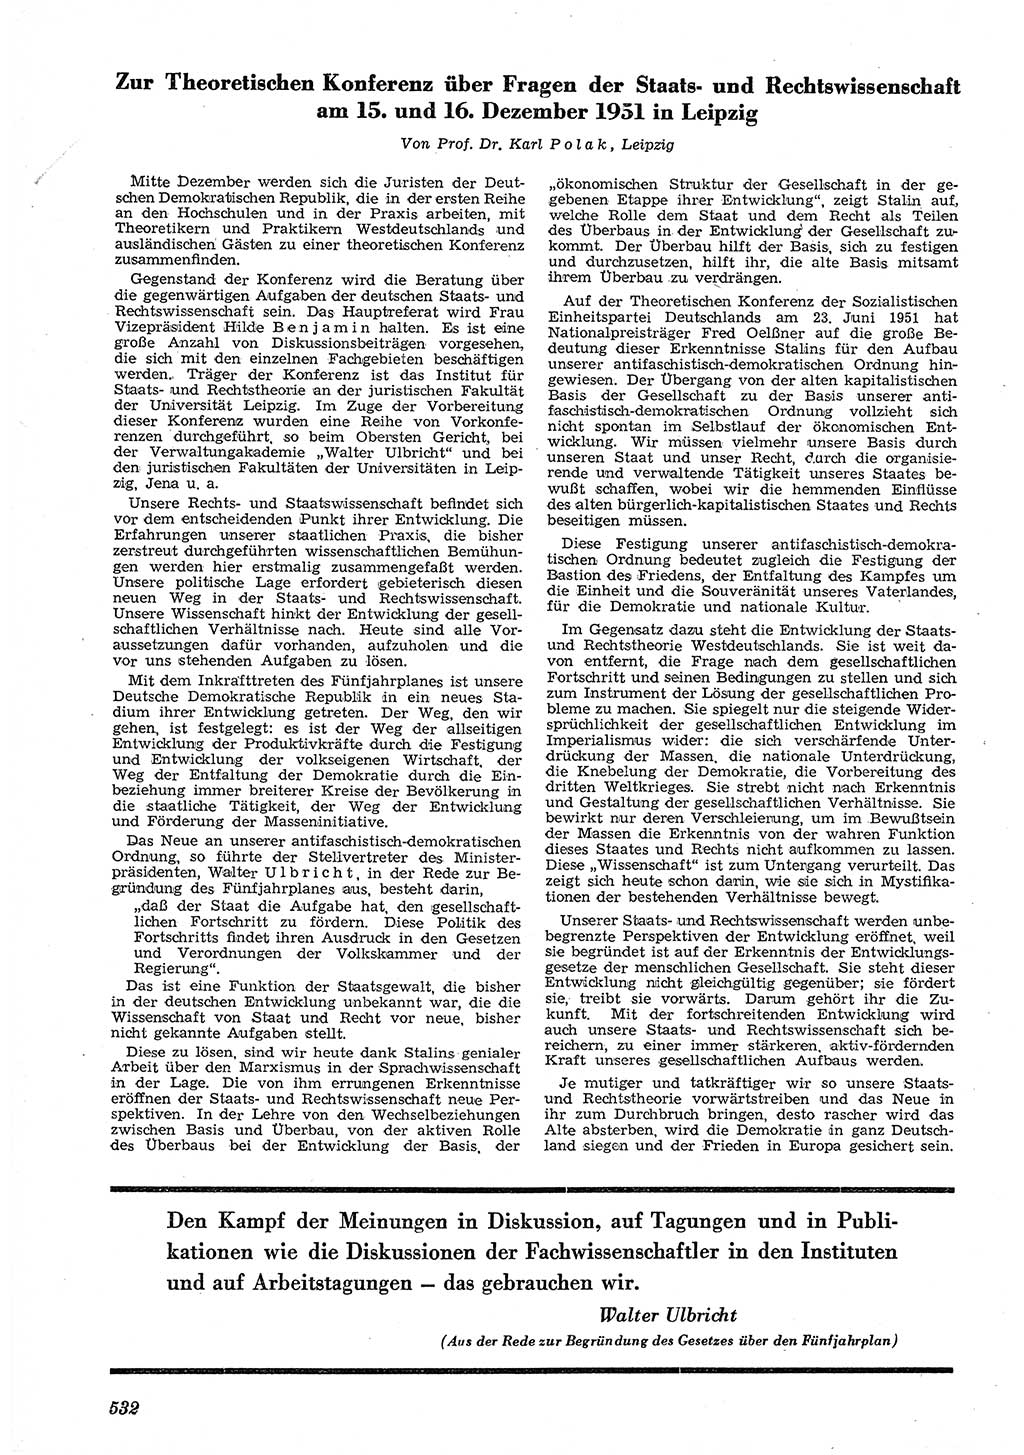 Neue Justiz (NJ), Zeitschrift für Recht und Rechtswissenschaft [Deutsche Demokratische Republik (DDR)], 5. Jahrgang 1951, Seite 532 (NJ DDR 1951, S. 532)